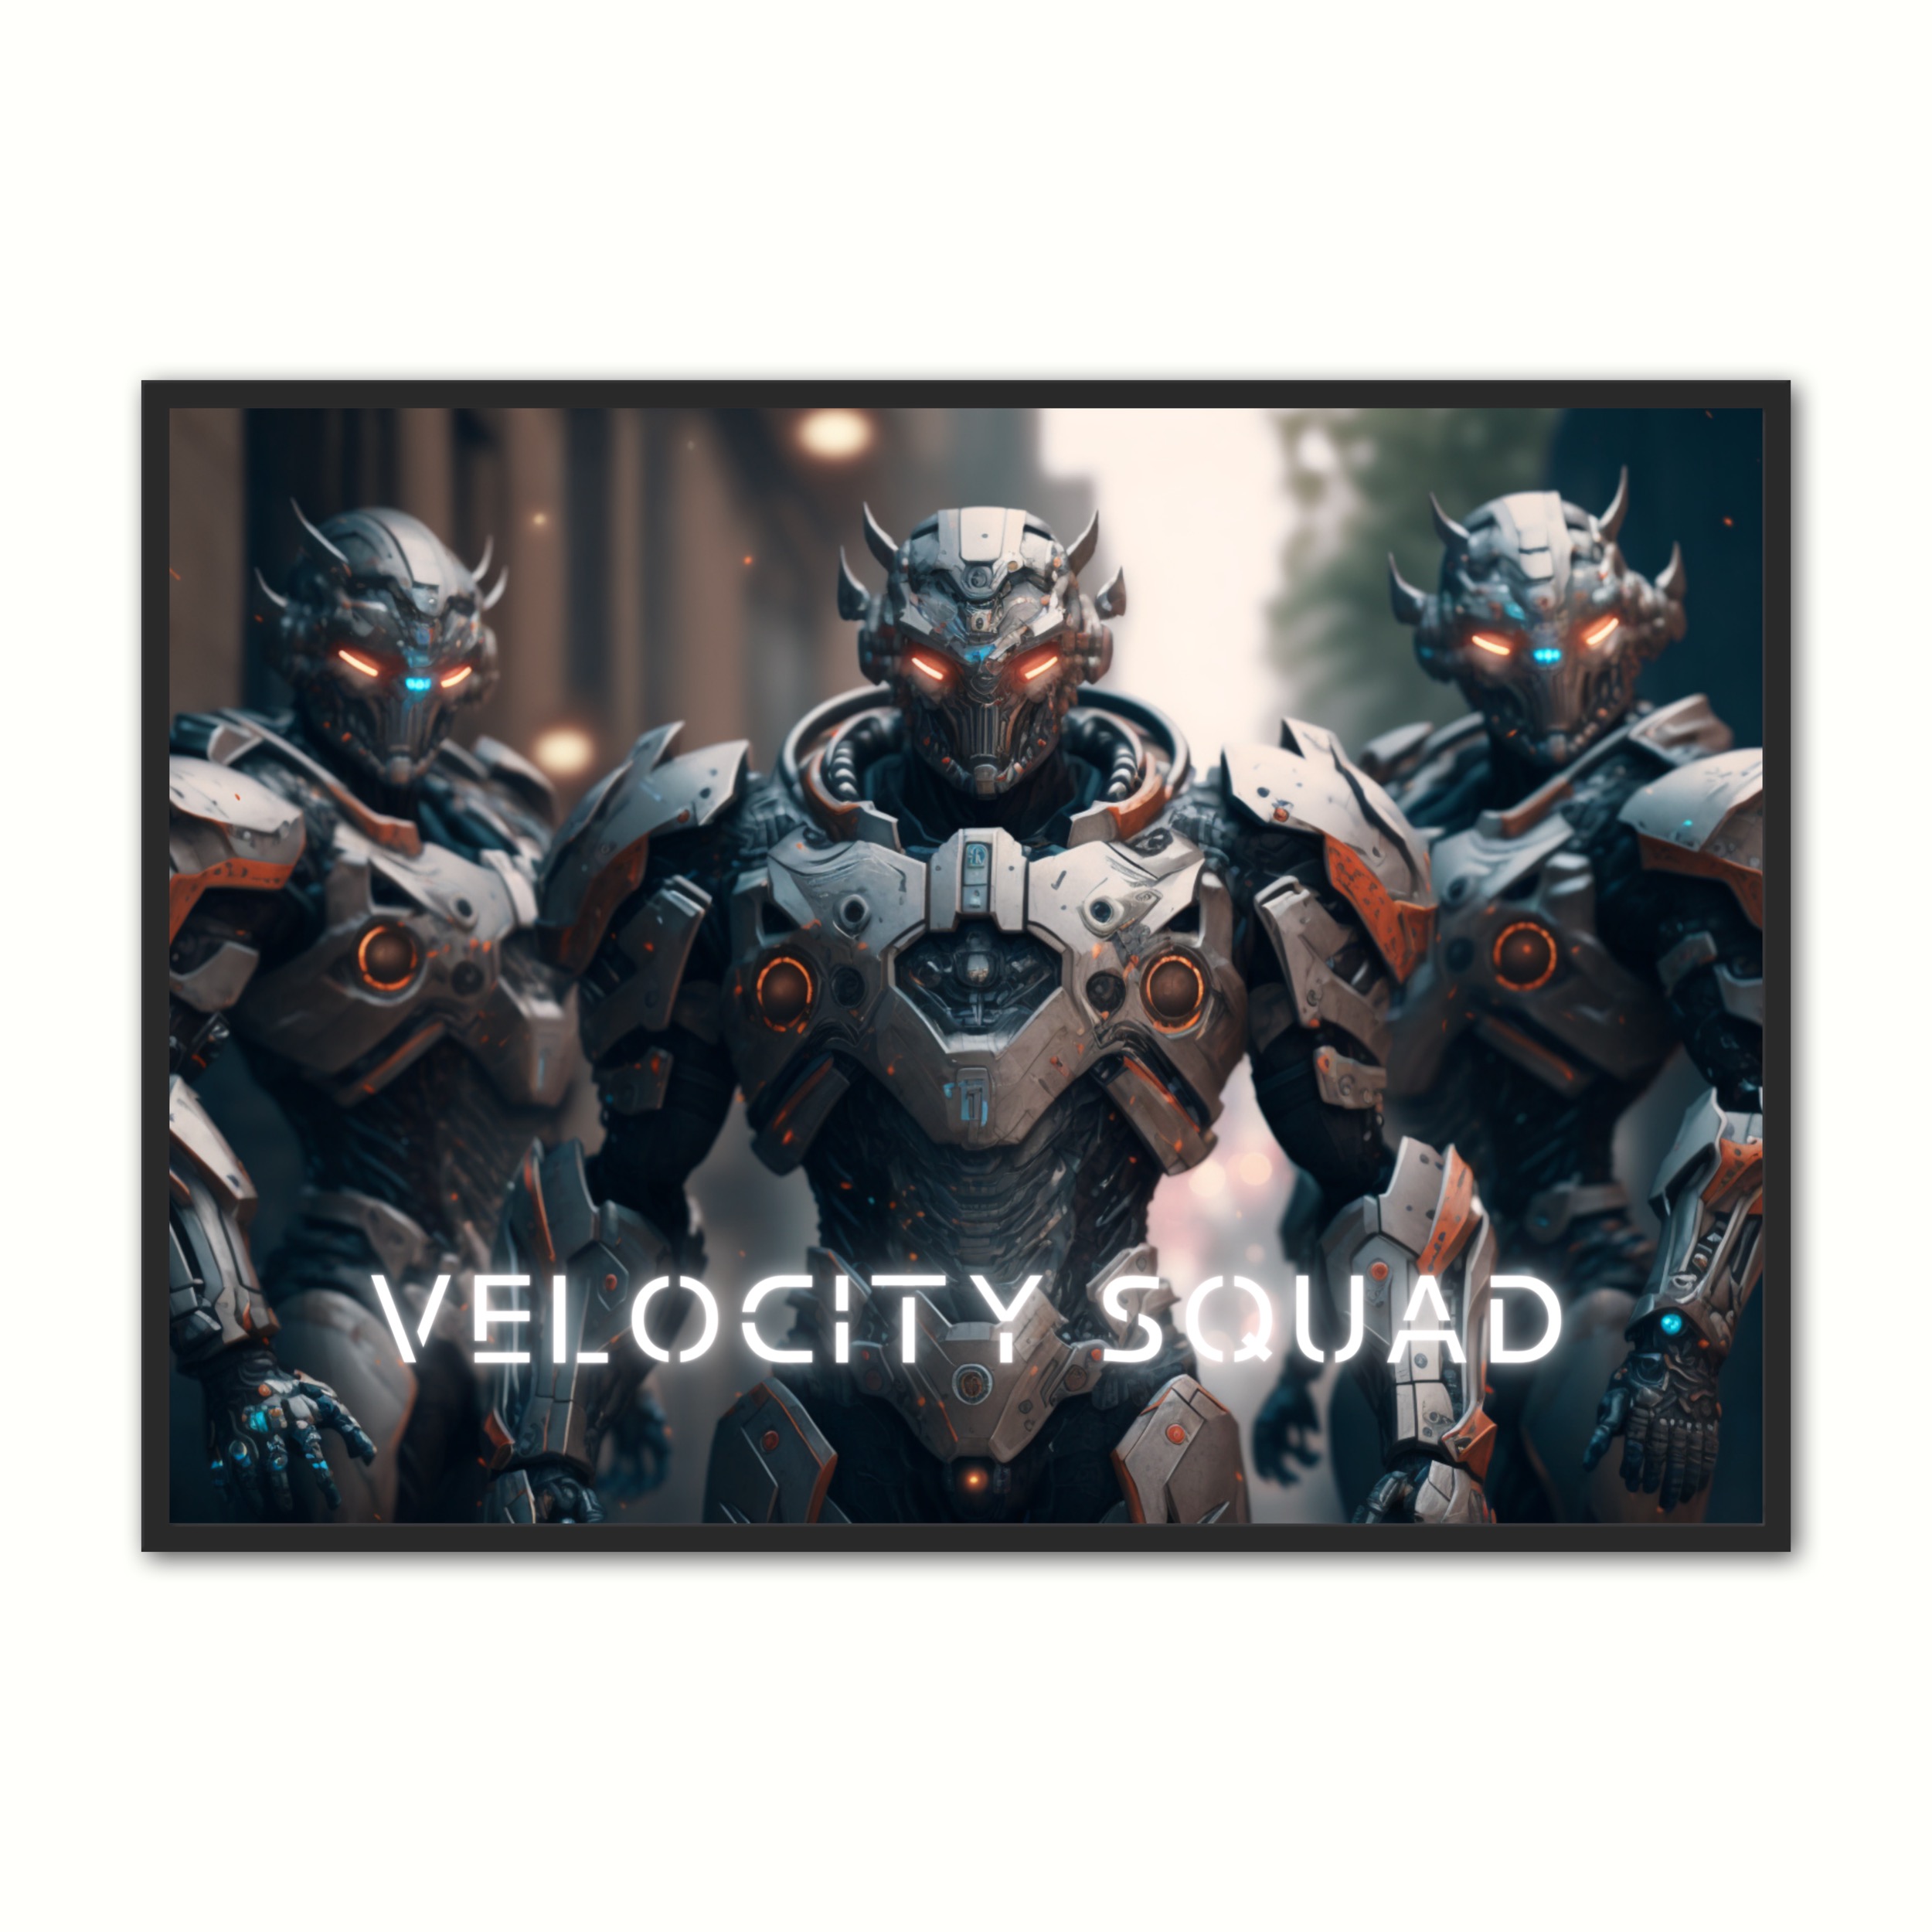 Billede af Plakat med Velocity Squad - Android 21 x 29,7 cm (A4)